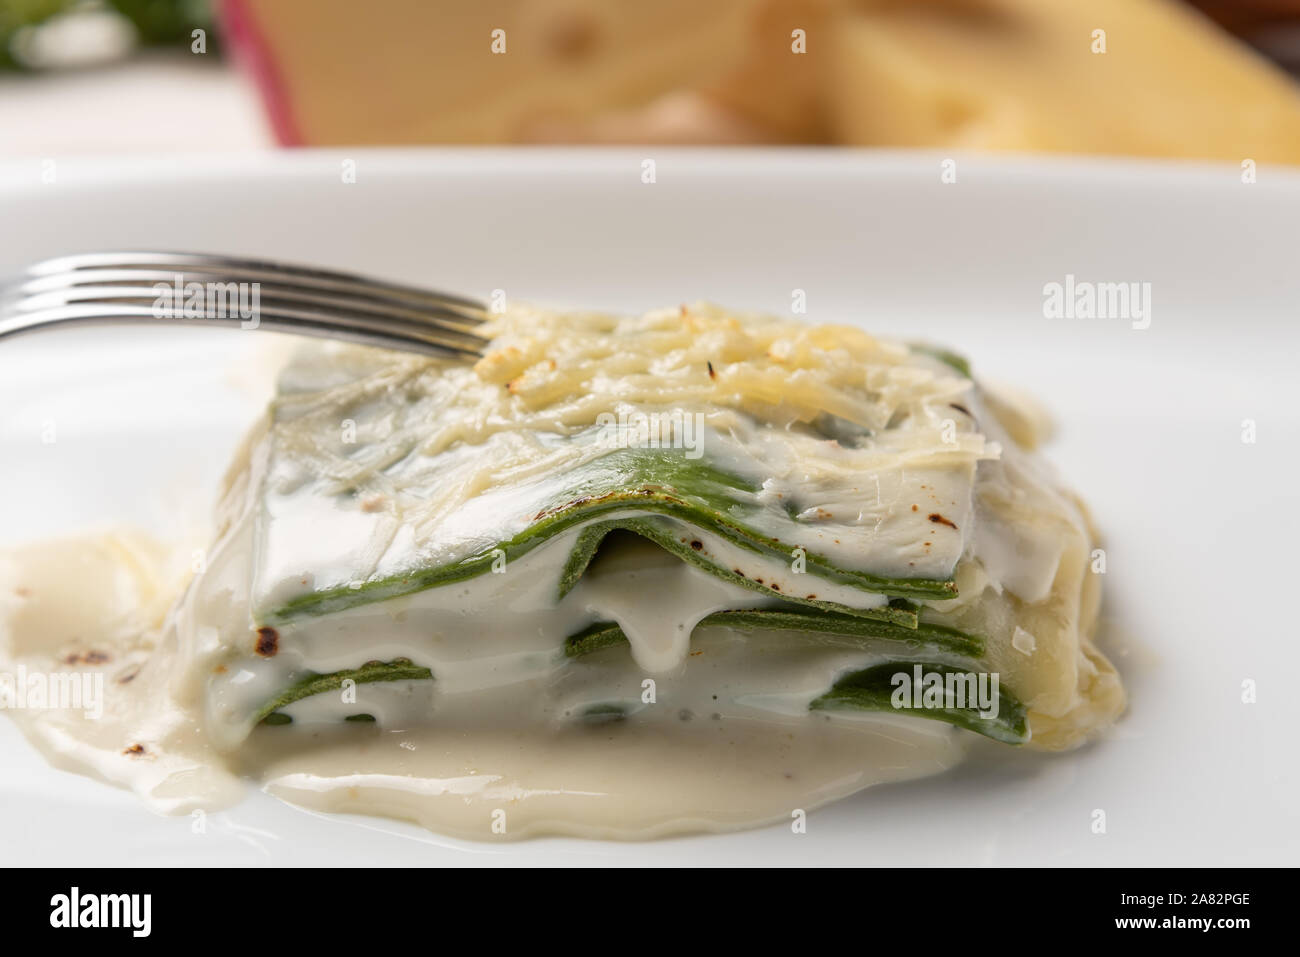 Des feuilles d'épinards frais lasagnes à la béchamel et de la sauce au fromage dans une assiette blanche. Lumière douce Banque D'Images